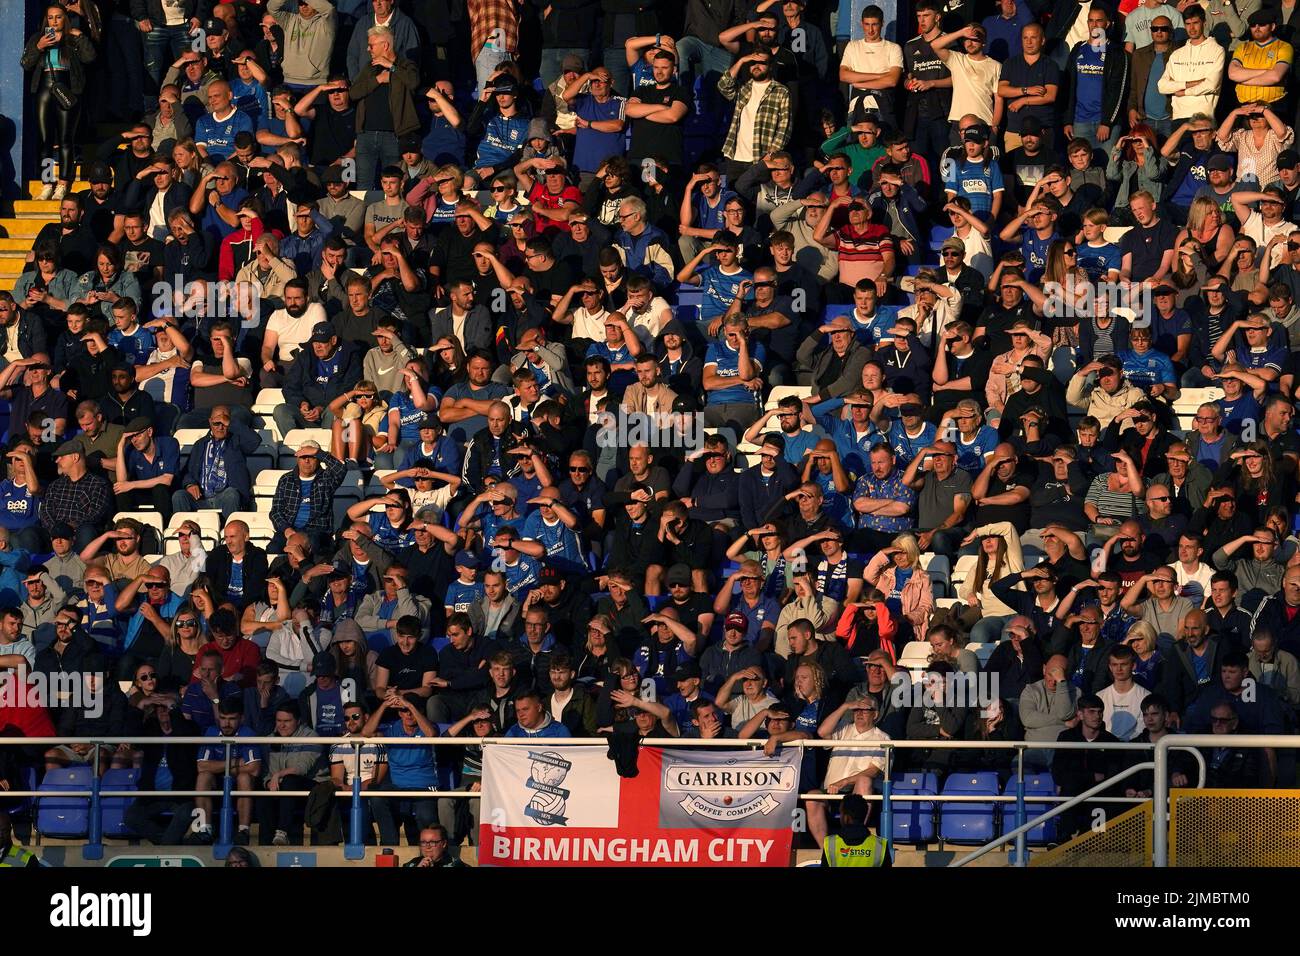 Birmingham City-Fans im Stadion während des Sky Bet Championship-Spiels in St. Andrew's, Birmingham. Bilddatum: Freitag, 5. August 2022. Stockfoto